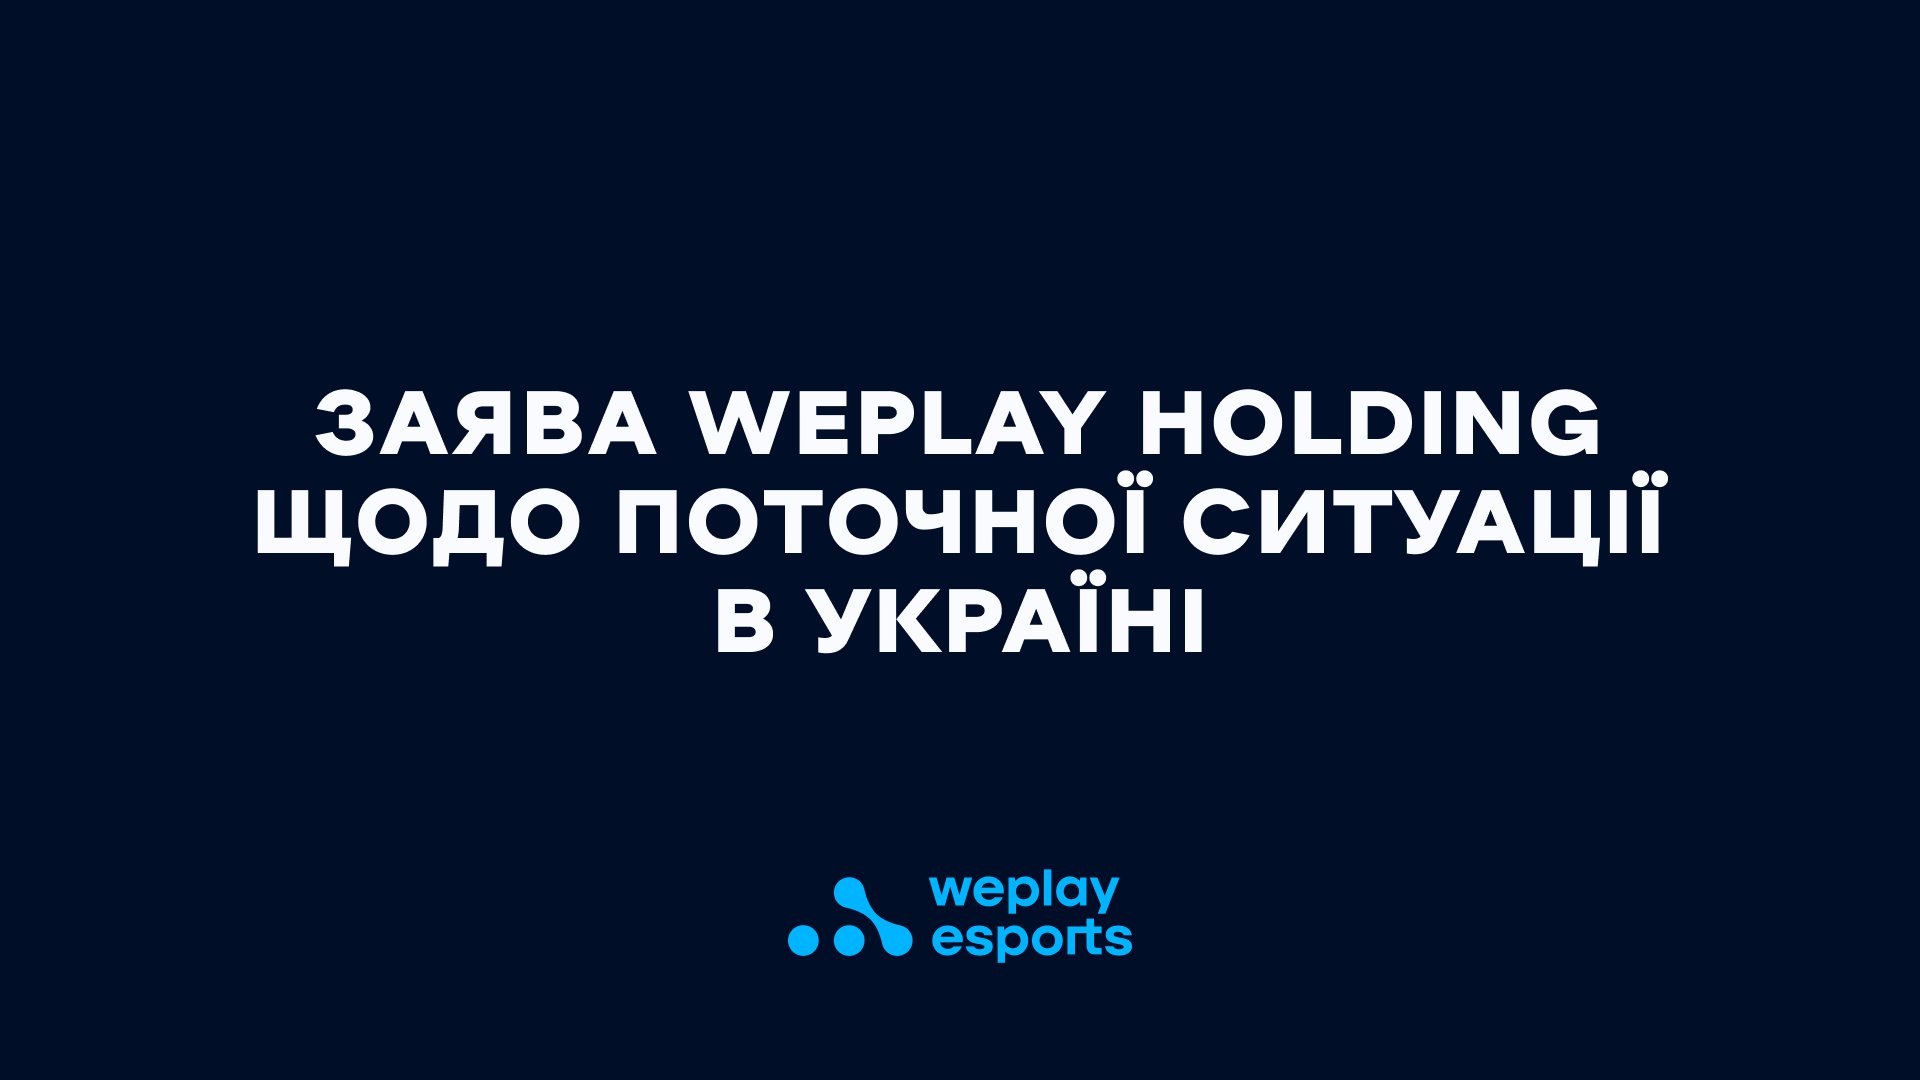 Український офіс WePlay Holding продовжує працювати віддалено, виконуючи всі зобов'язання перед стейкхолдерами. Зображення: WePlay Holding